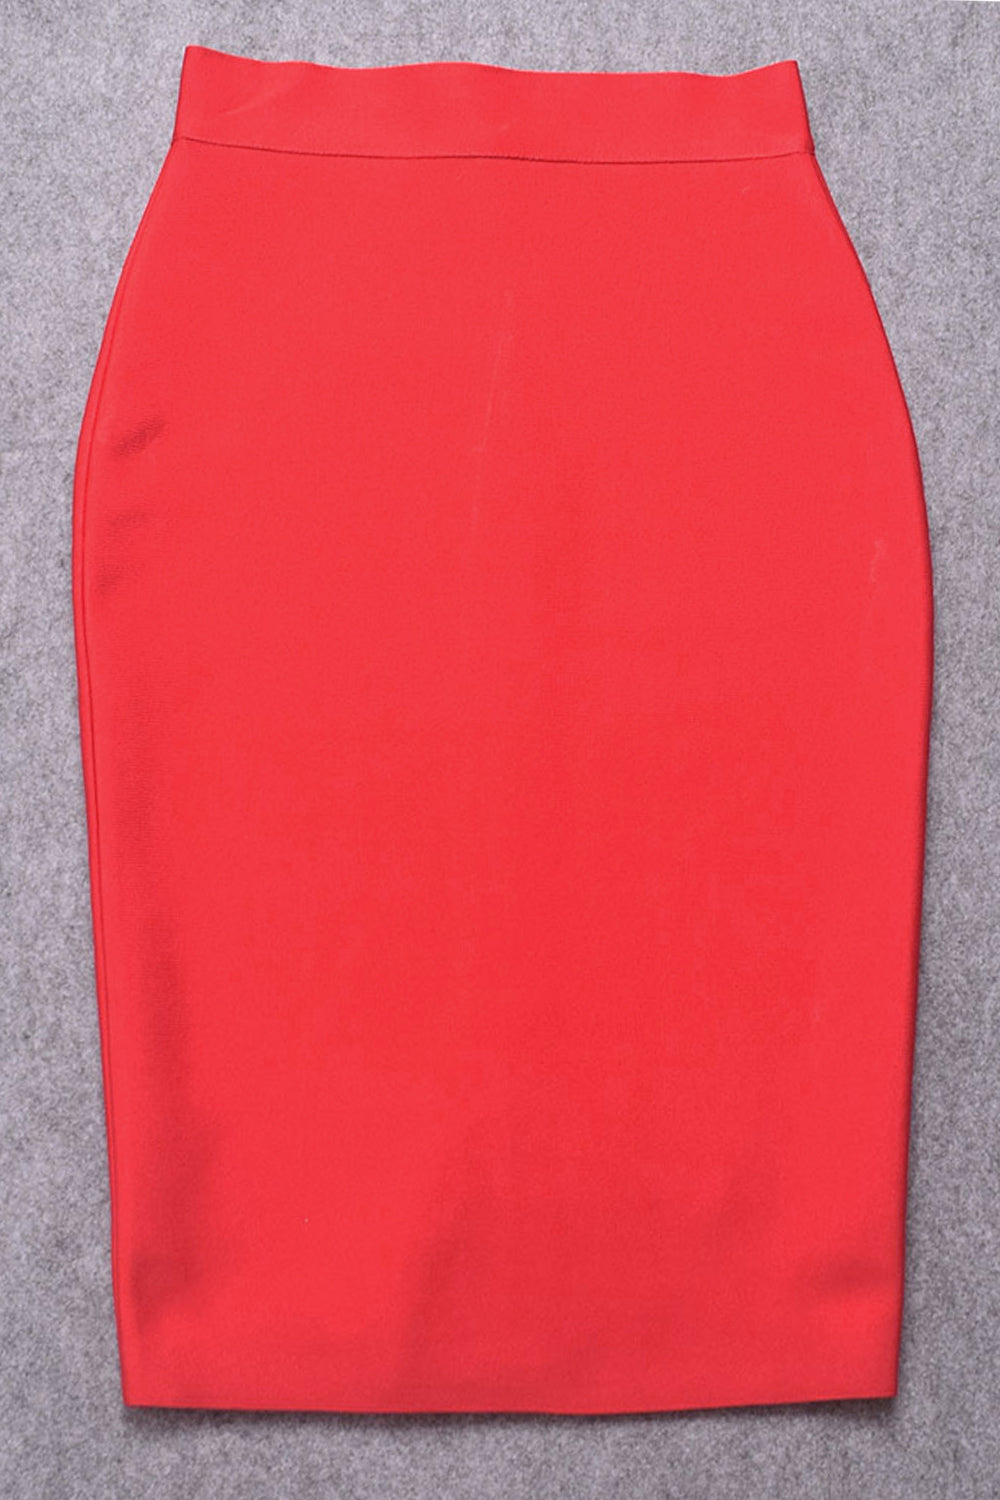 red skirt, red bandage skirt, red pencil skirt, skirt, bandage skirt, high waist bandage skirt, knee length bandage skirt, solid color skirt, pencil skirt, office skirt, bandage skirt for women, women’s bottom